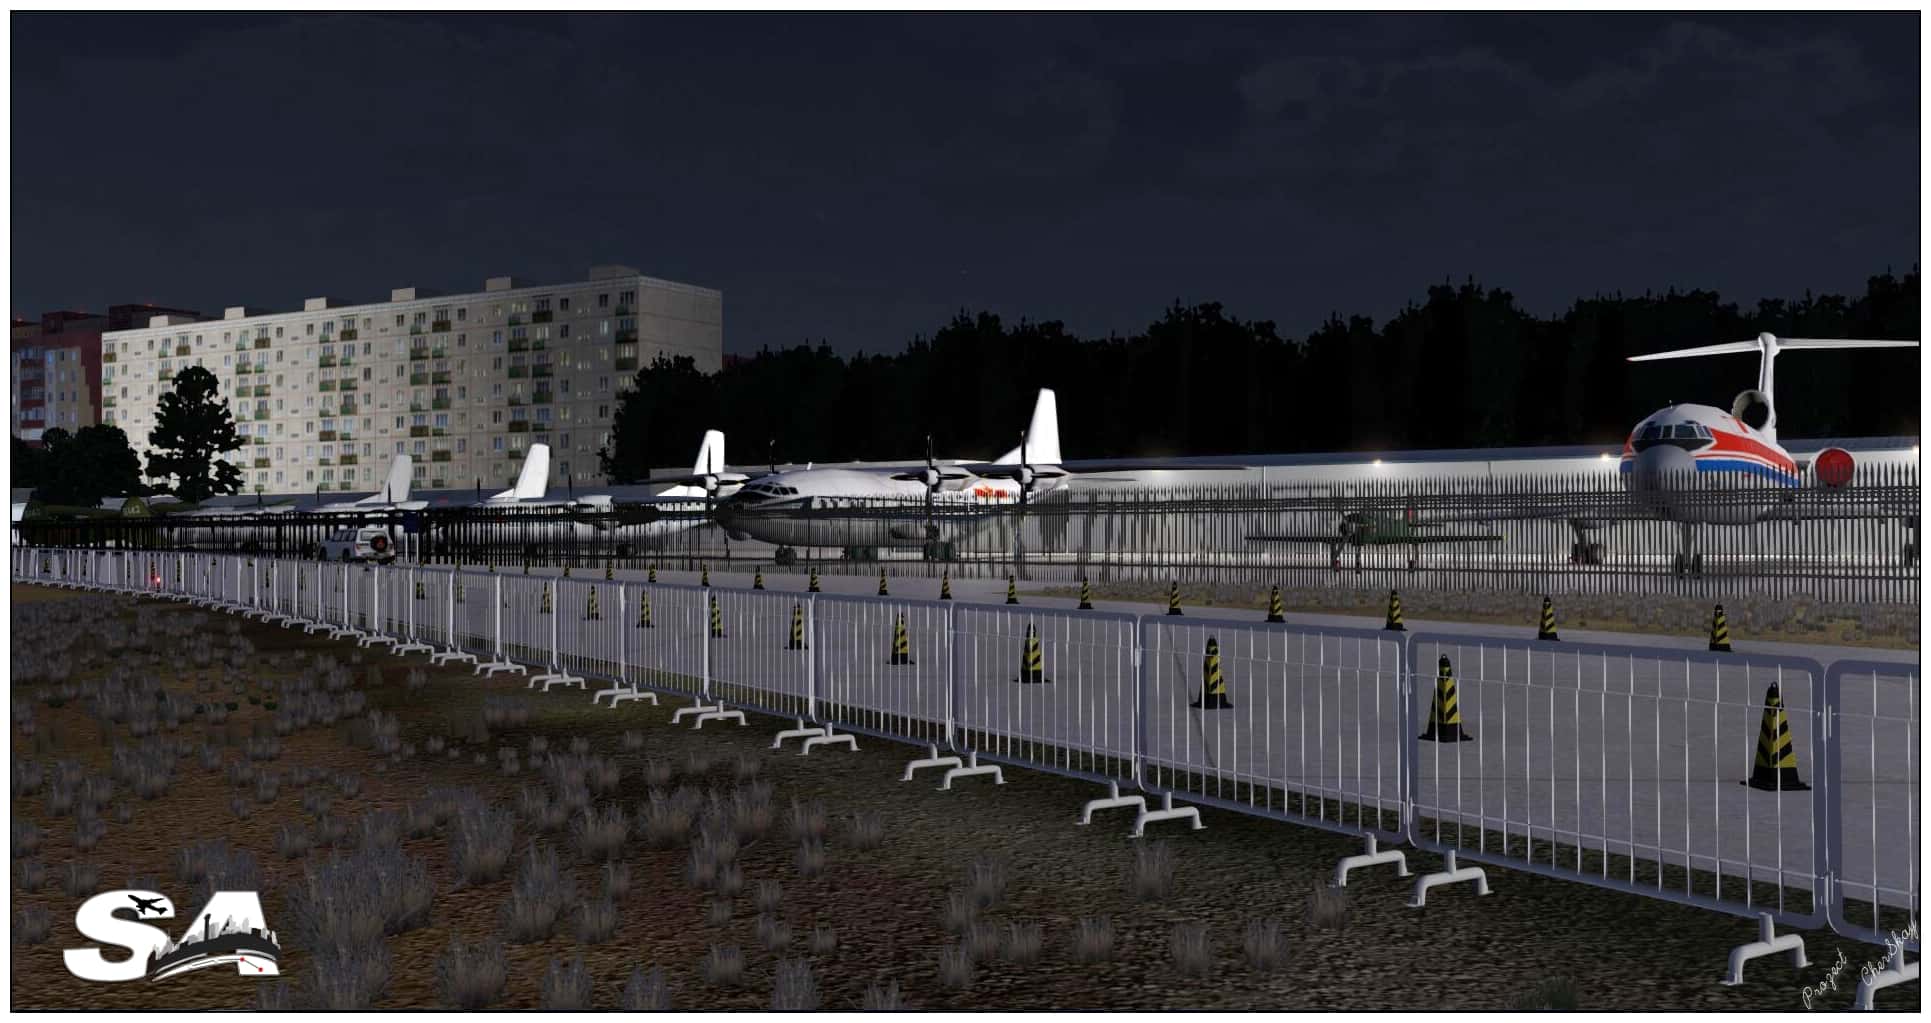 【星图地景】北京南苑机场ZBNY 正式发布-4278 